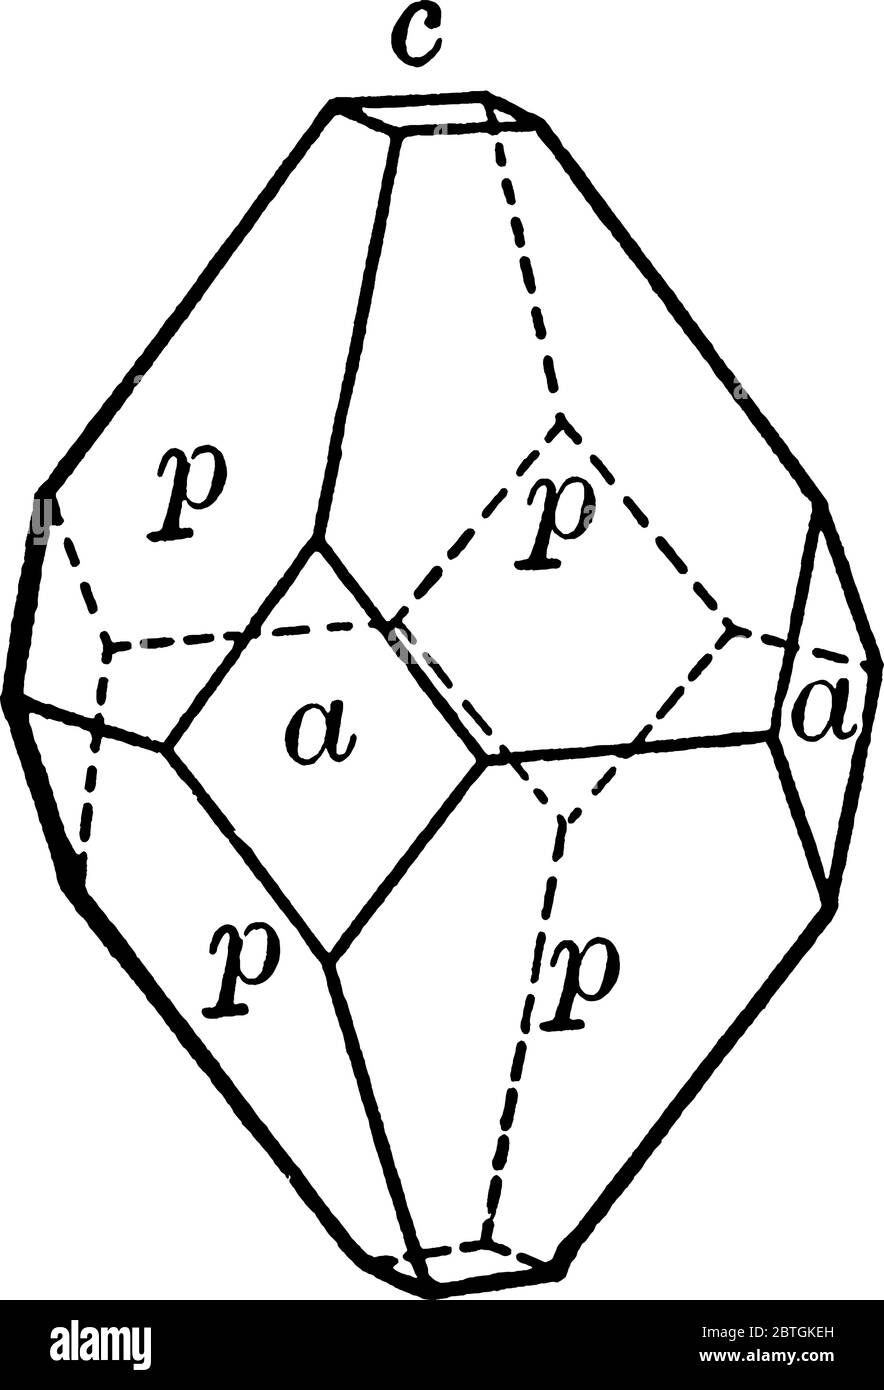 el nombre apophyllite se refiere a un grupo específico de filosilices, una clase de minerales, dibujo de líneas vintage o ilustración de grabado. Ilustración del Vector